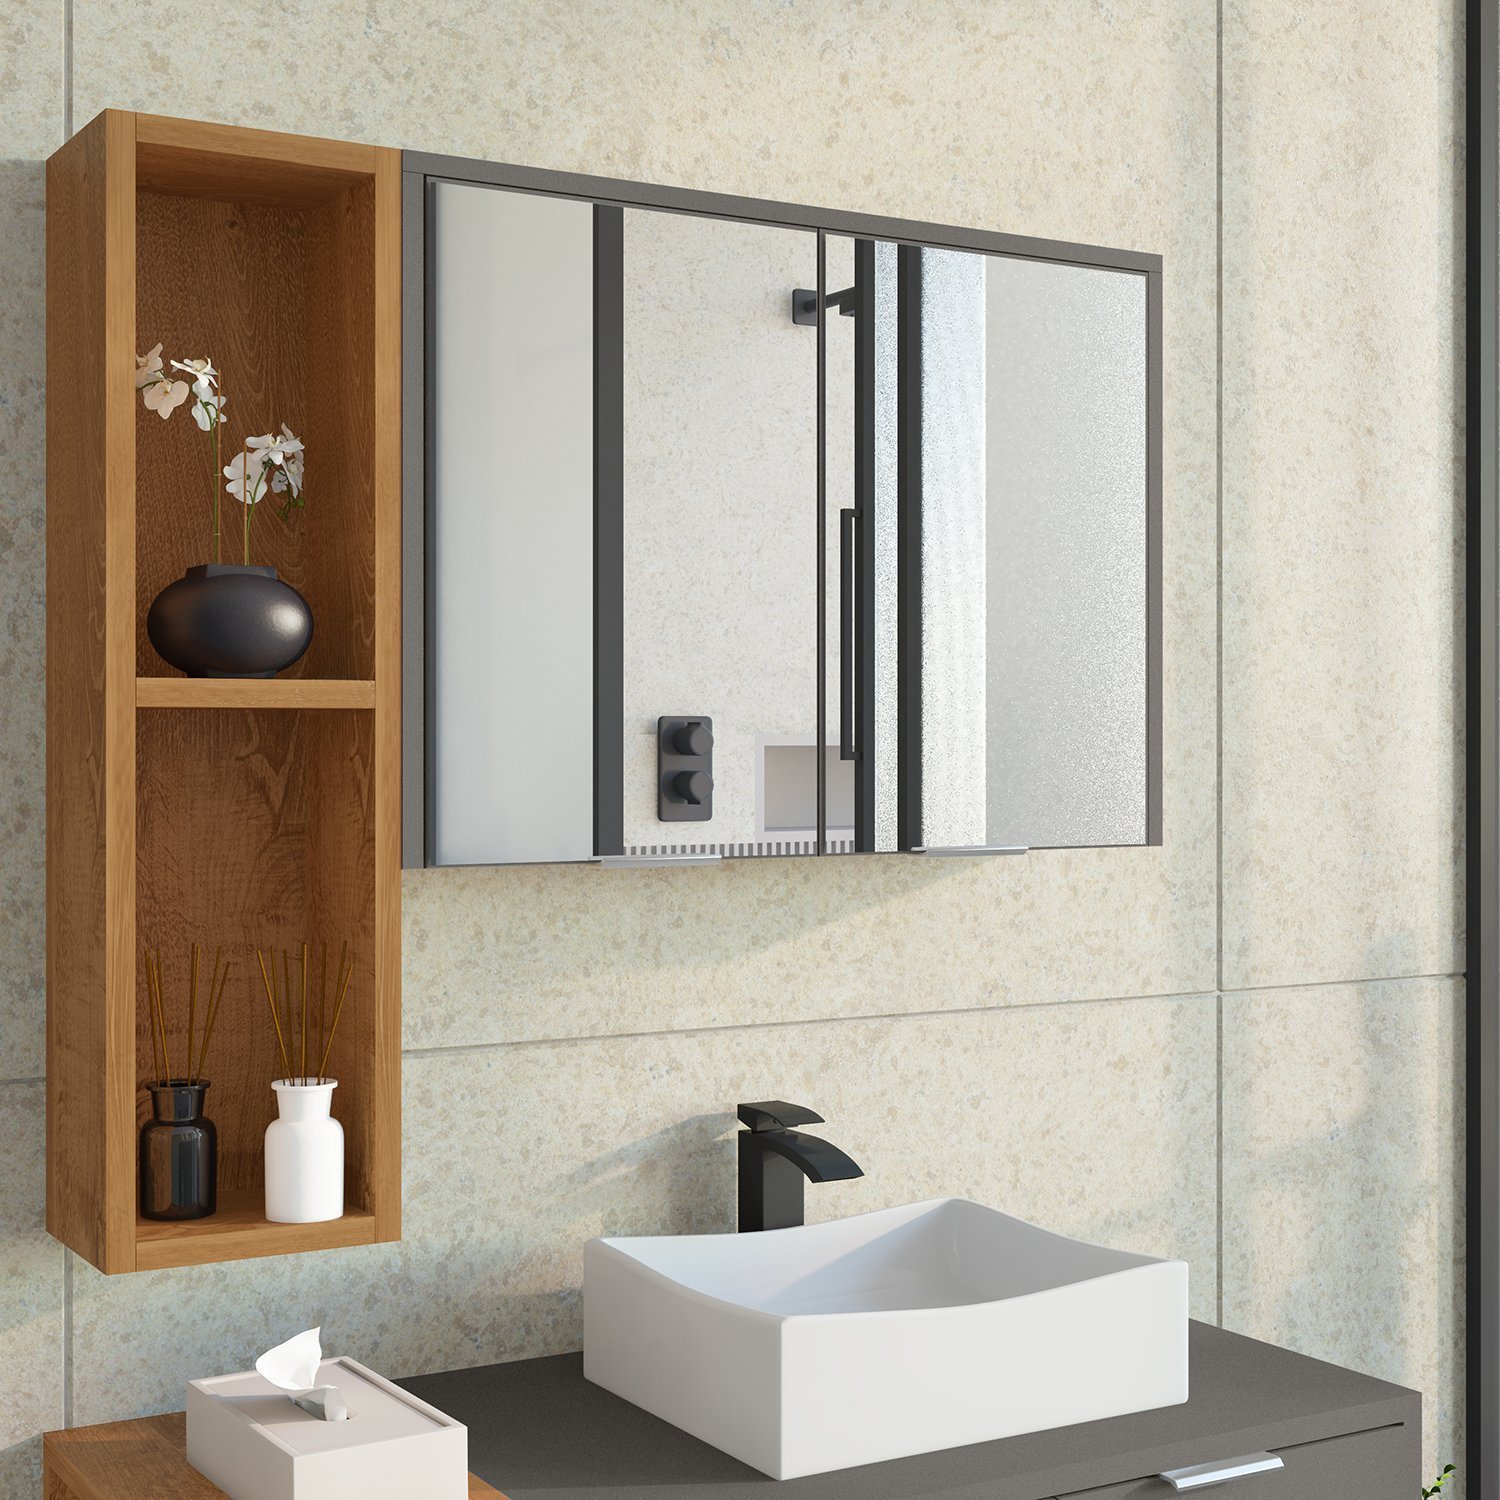 Espelheira Para Banheiro Ibiza 2 Portas com Espelho Nicho Multifuncional Puxador de Alumínio